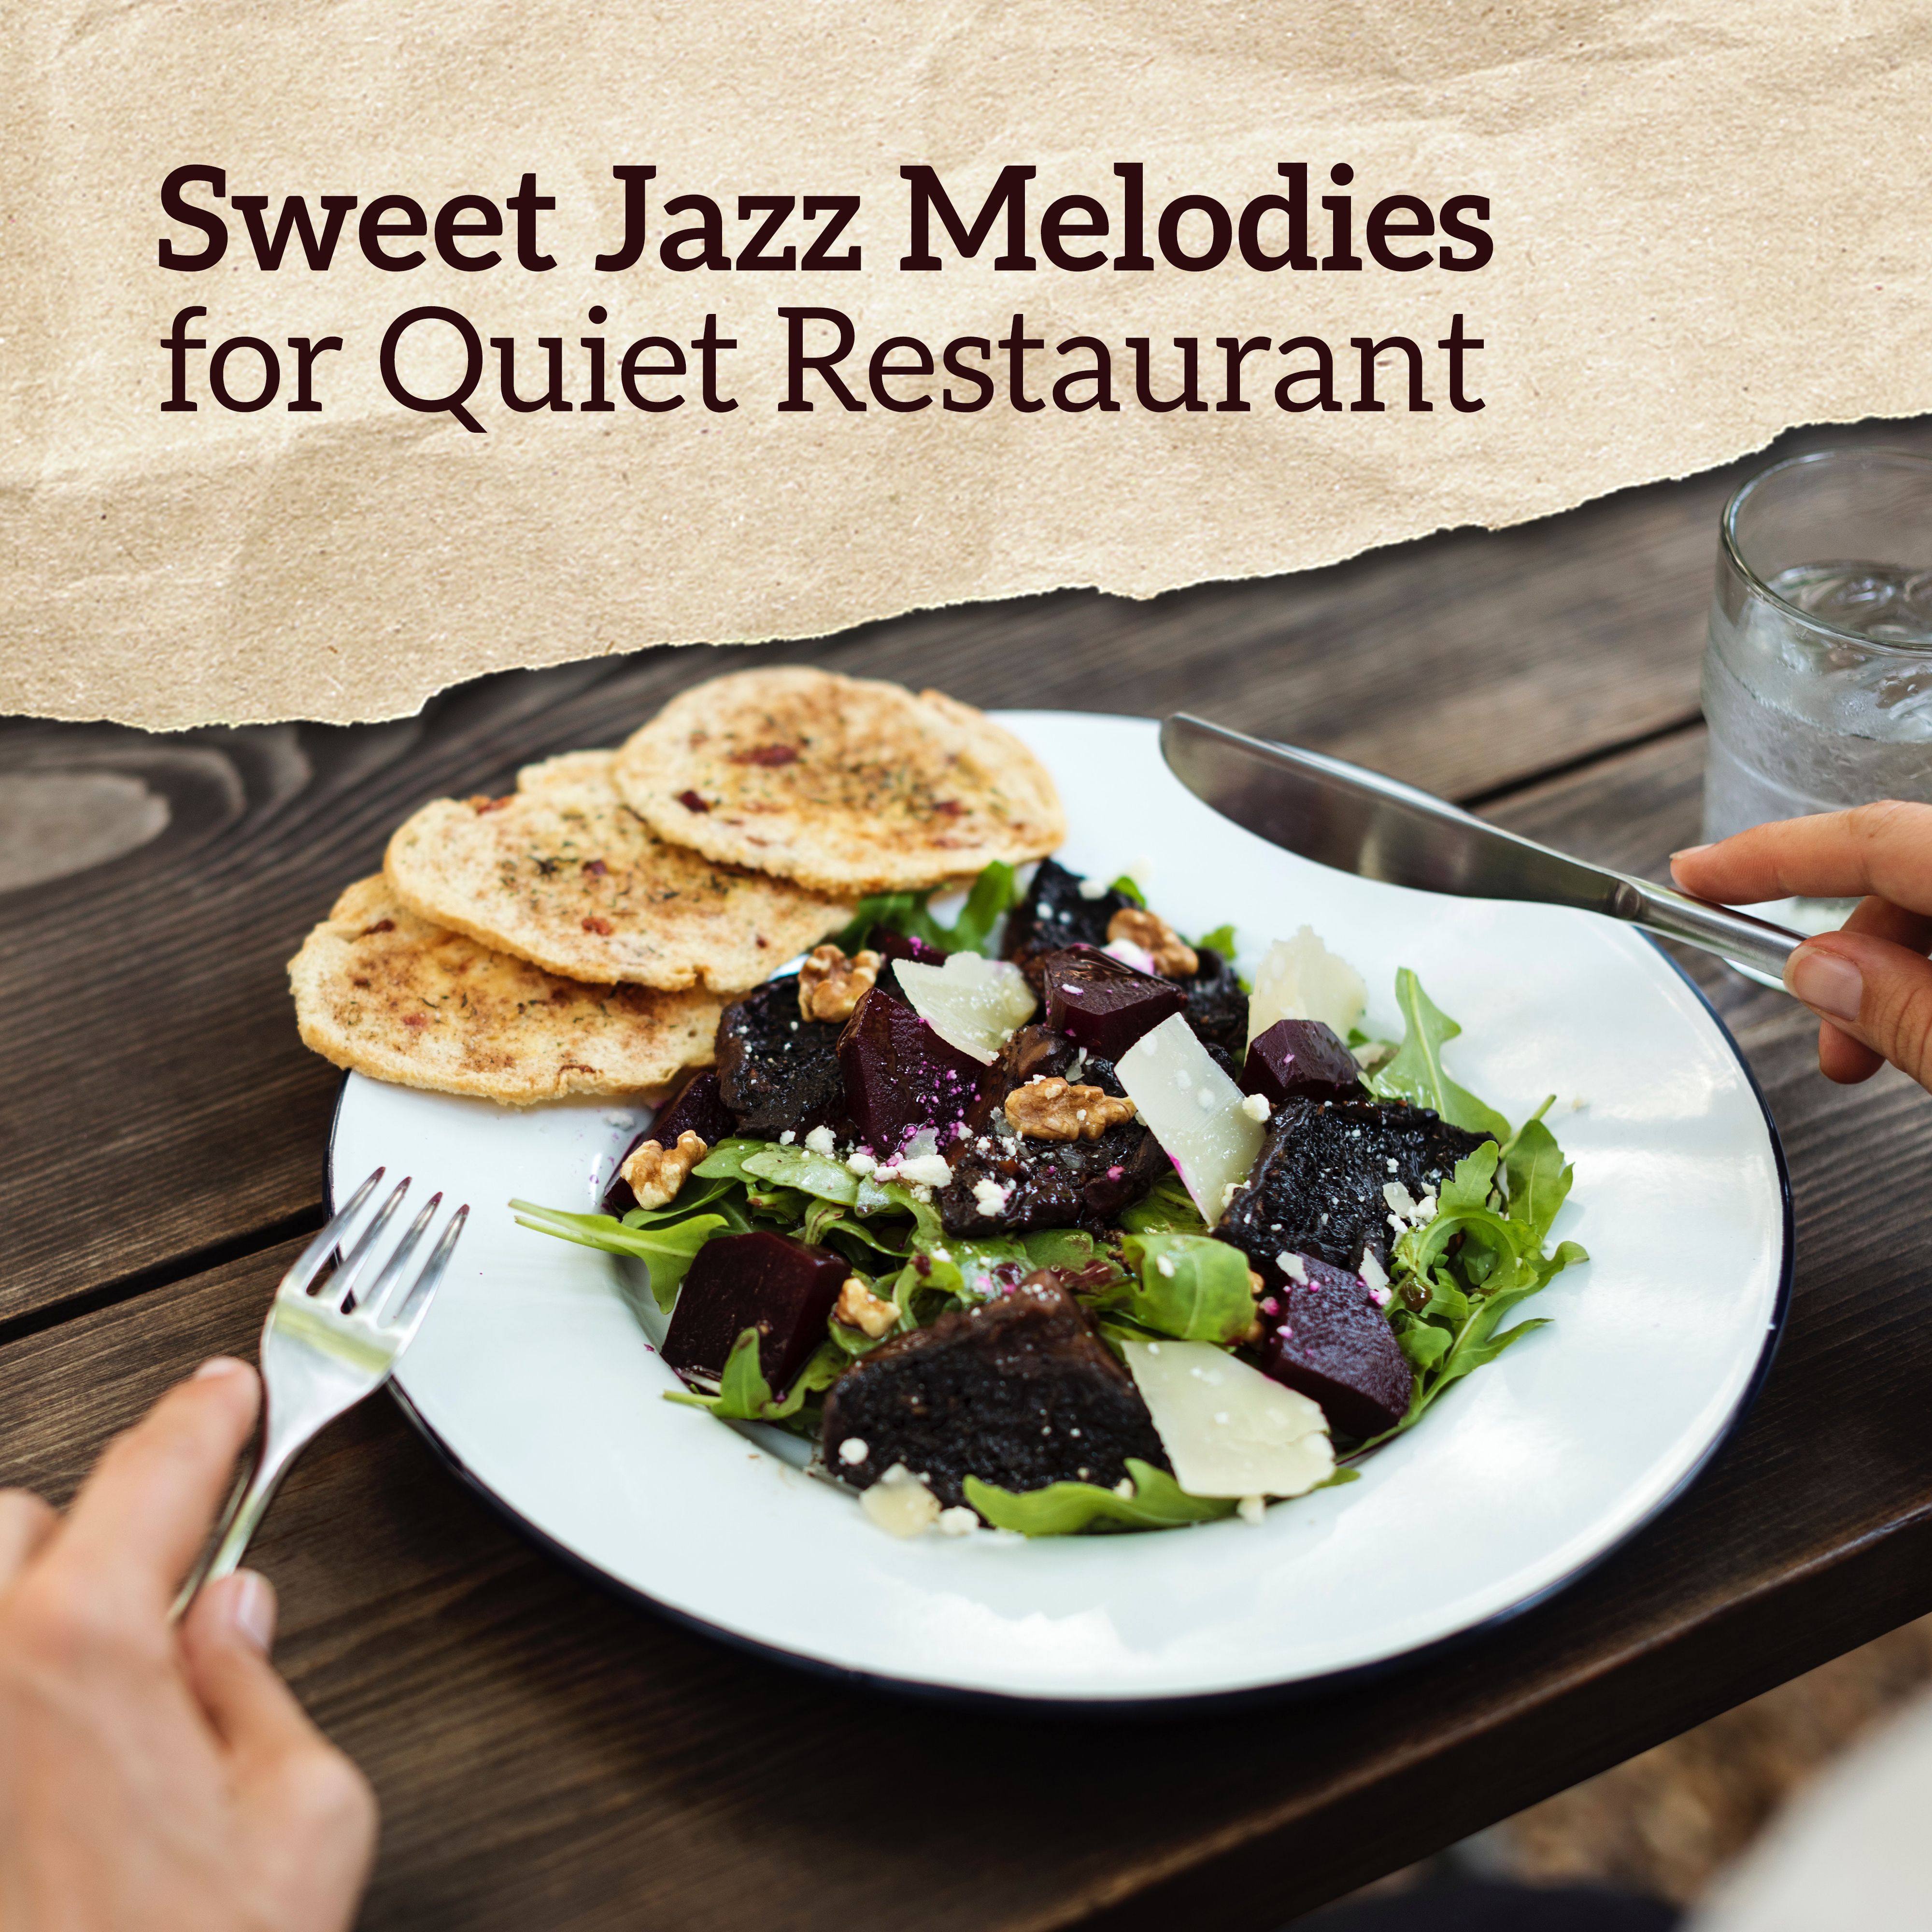 Sweet Jazz Melodies for Quiet Restaurant